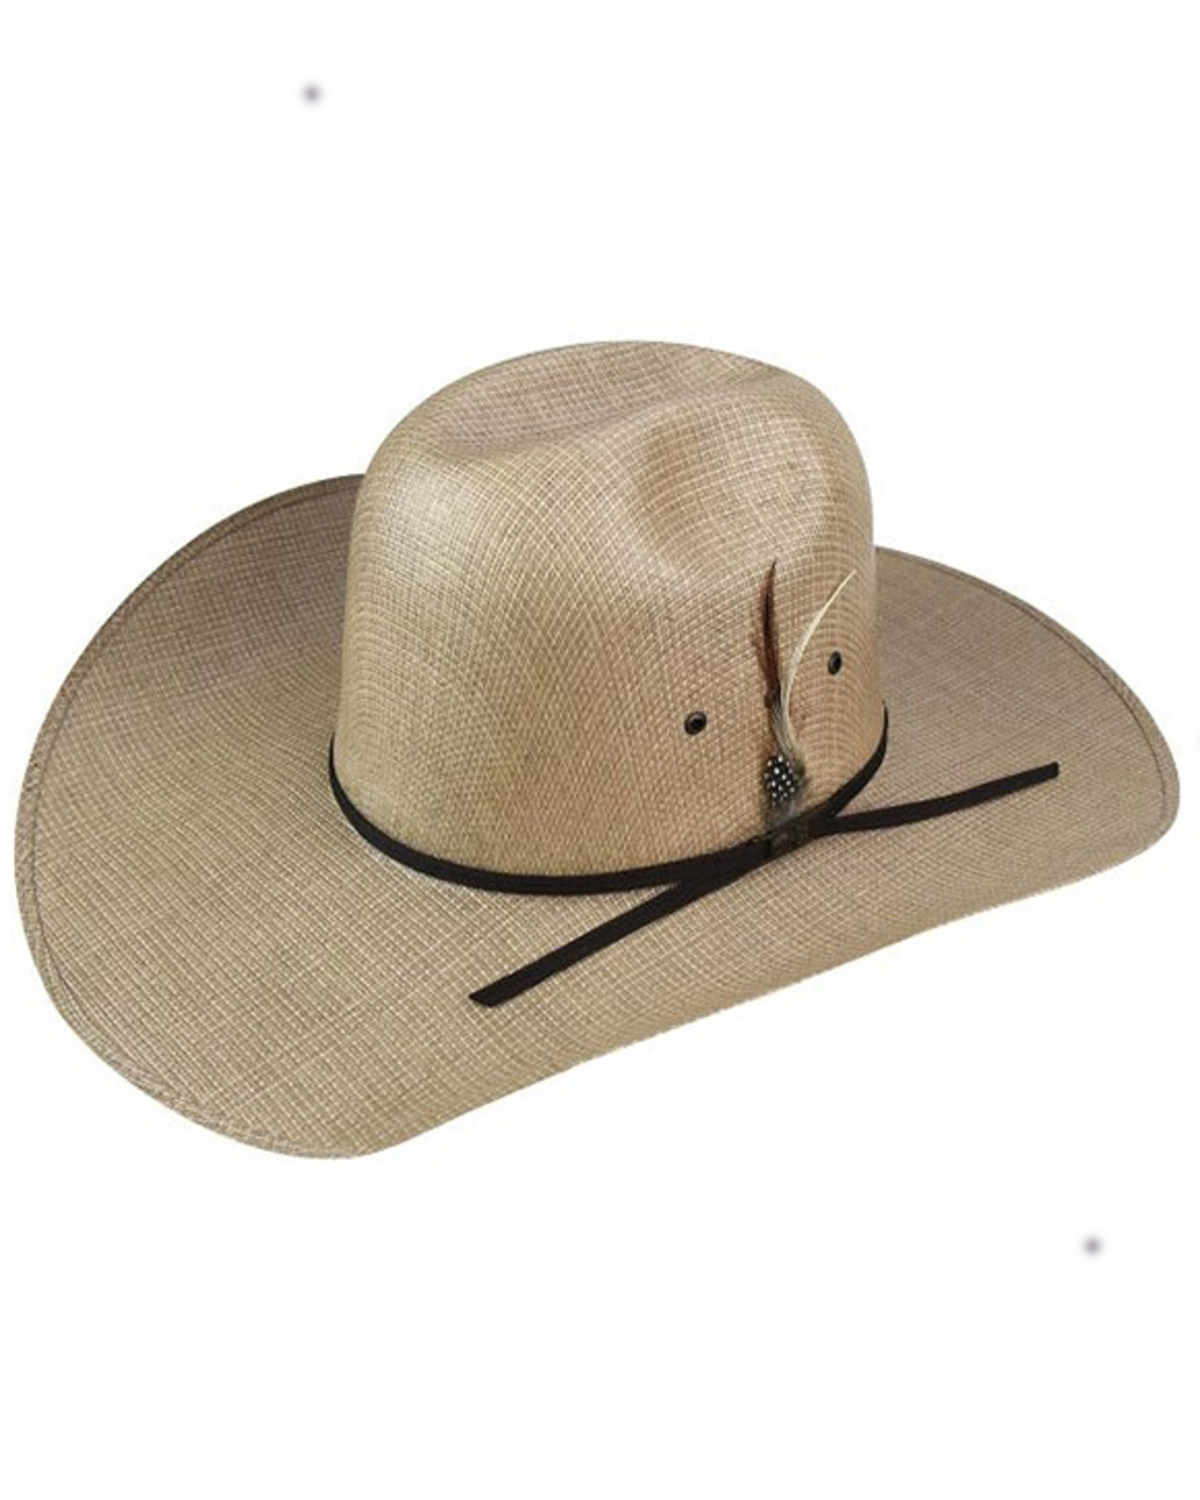 Bailey Dirk 10X Straw Cowboy Hat